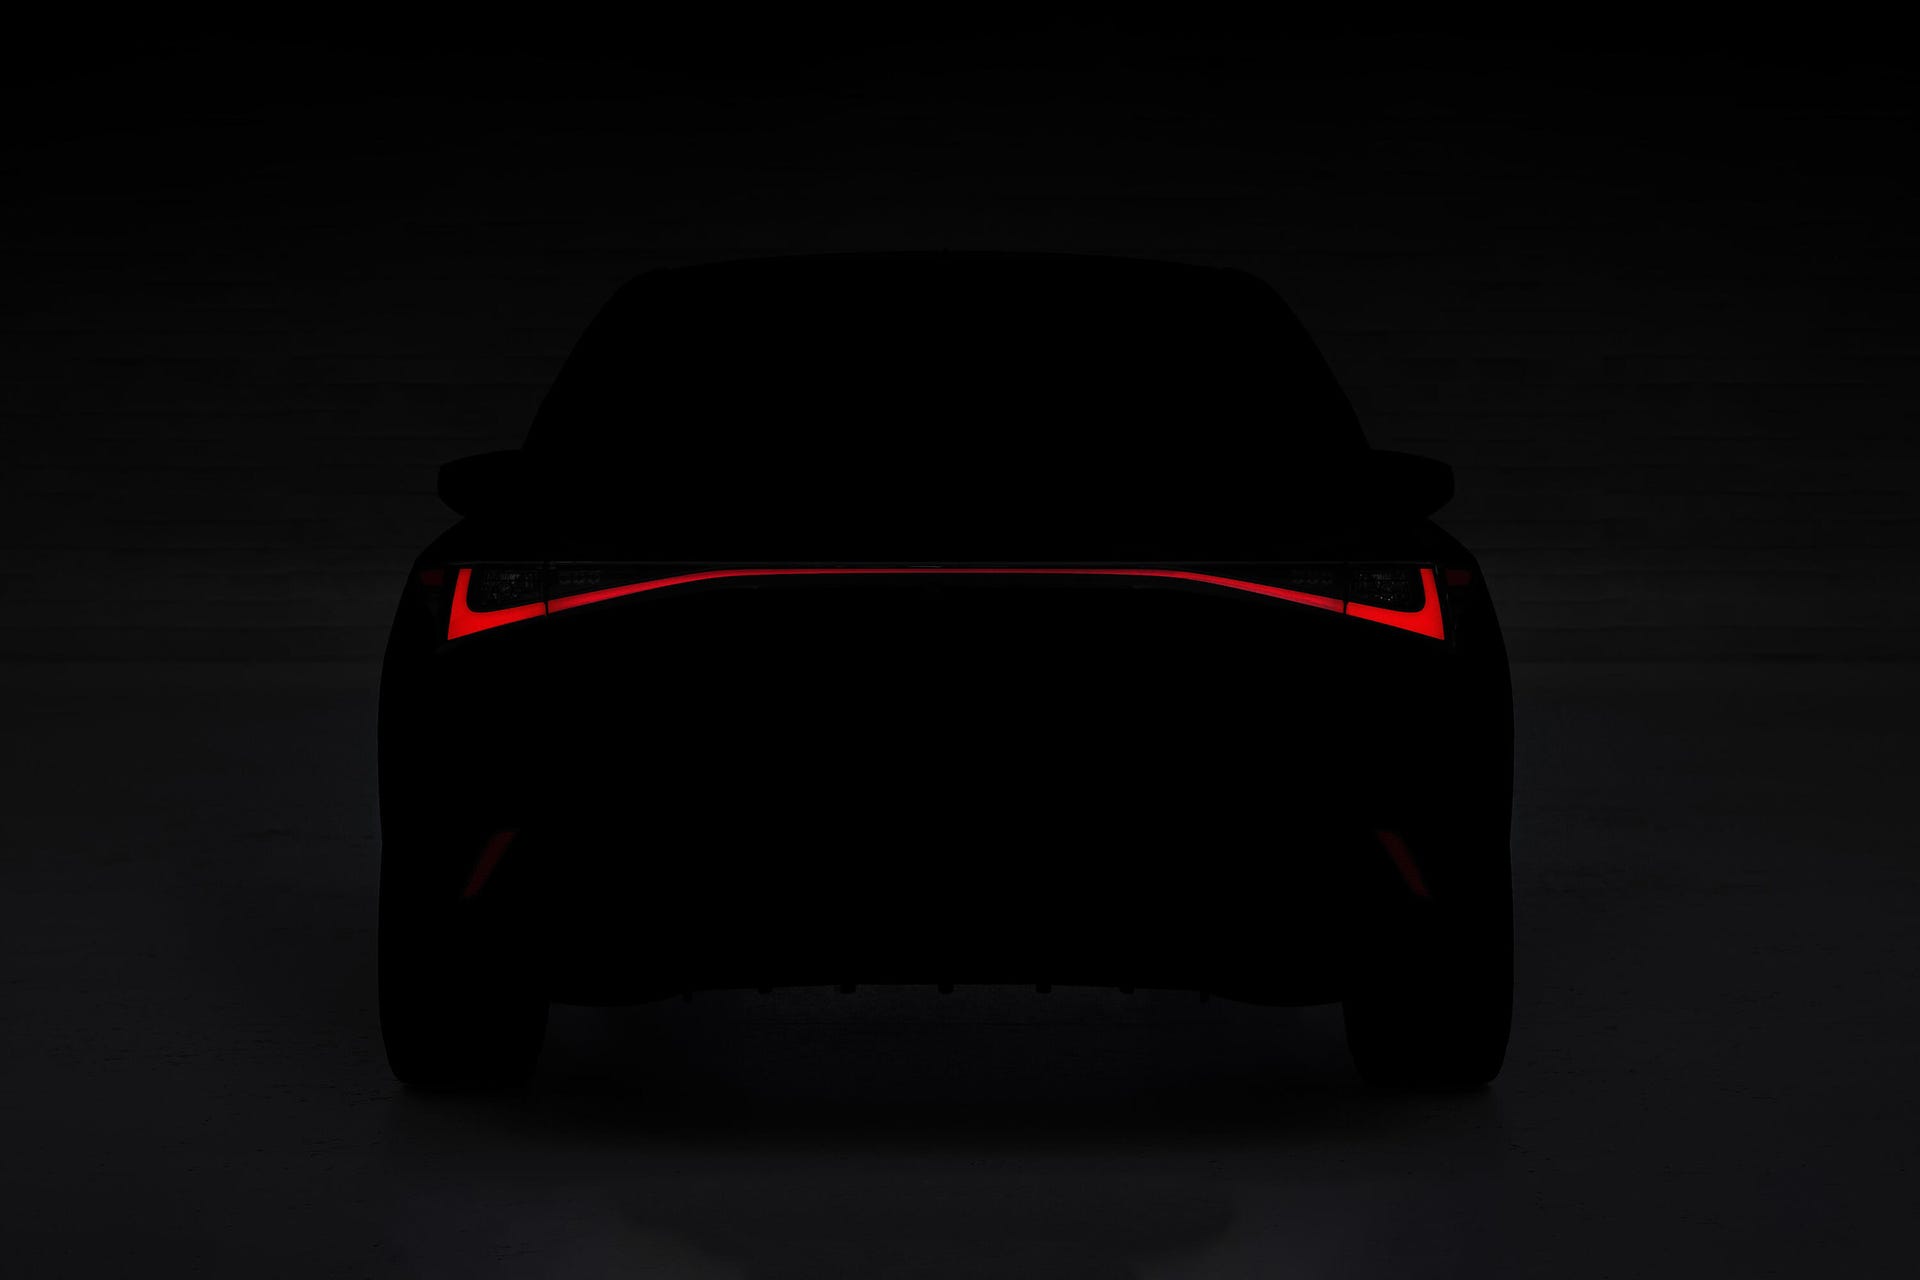 2021 Lexus IS teaser